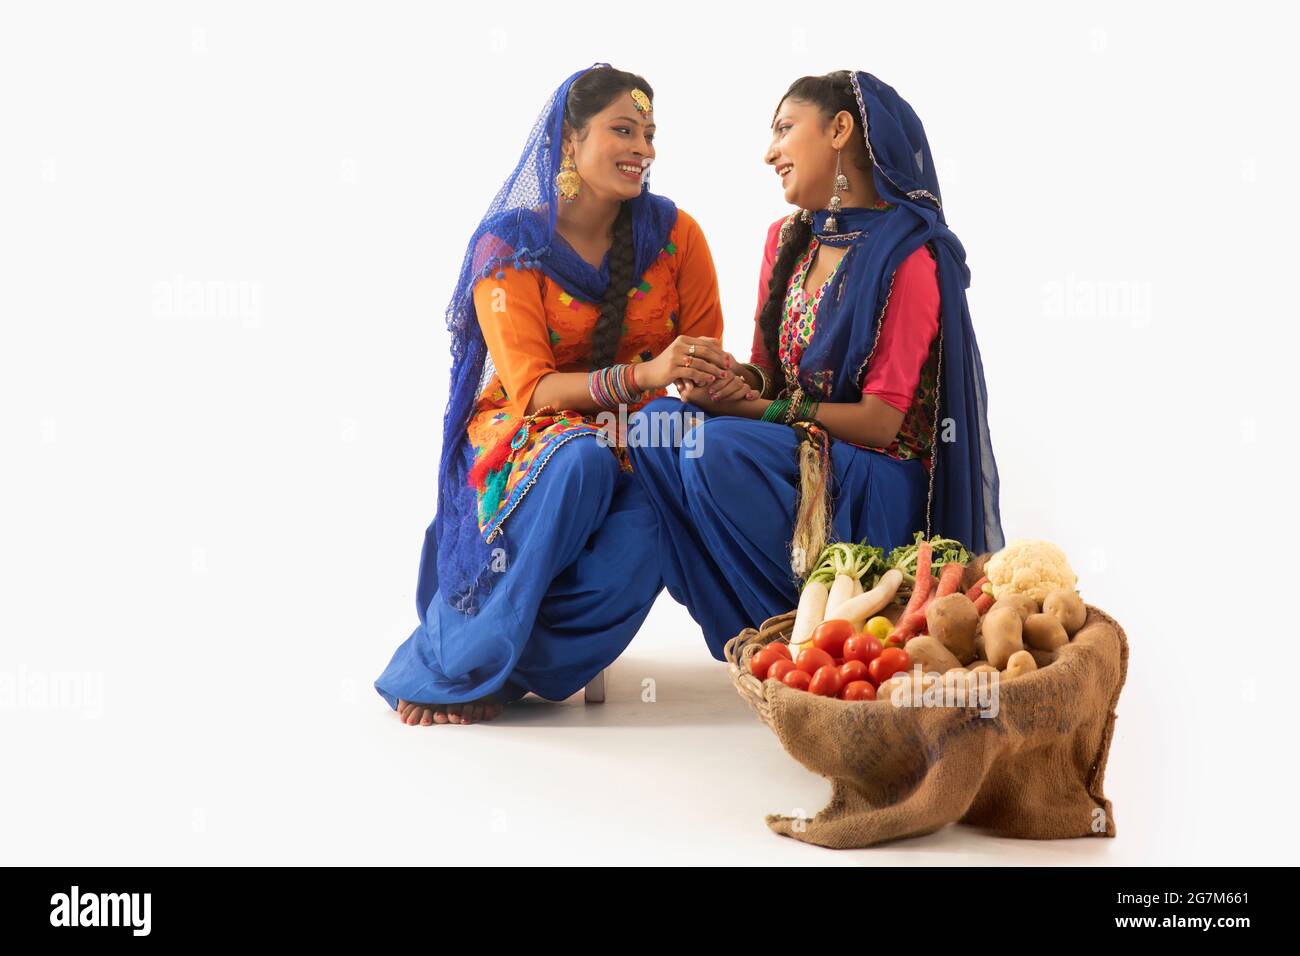 Dos mujeres en traje Giddha sentados juntas sosteniendo las manos con una cesta de verduras a su lado. Foto de stock